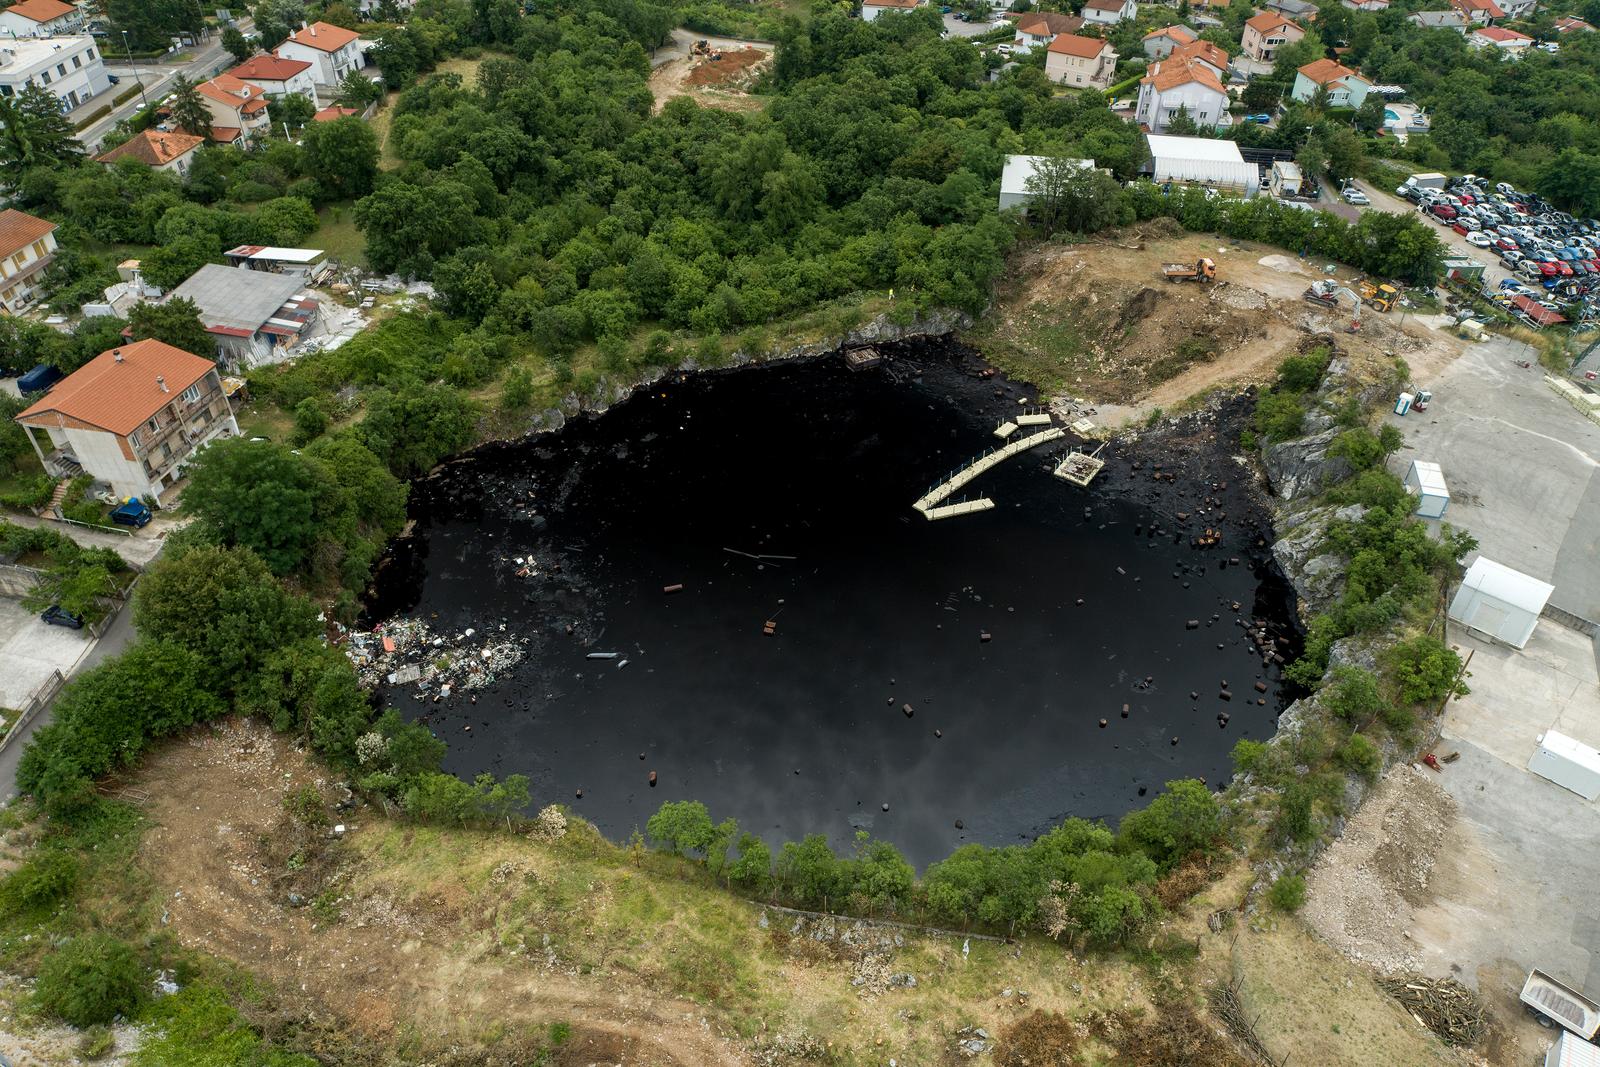 13.07.2023., Viskovo - Zracna fotografija prve etape sanacije crne jame Sovjak u Viskovu u koju se godinama u bivsoj drzavi odlagao opasni otpad, poceo je 7. srpnja. Ukupna sanacija vrijedna je oko 50 milijuna eura, od kojih je 85 posto sredstava osigurano iz EU fondova. Crna jama Sovjak i okolica snimljeno iz zraka. Photo: Igor Kralj/PIXSELL